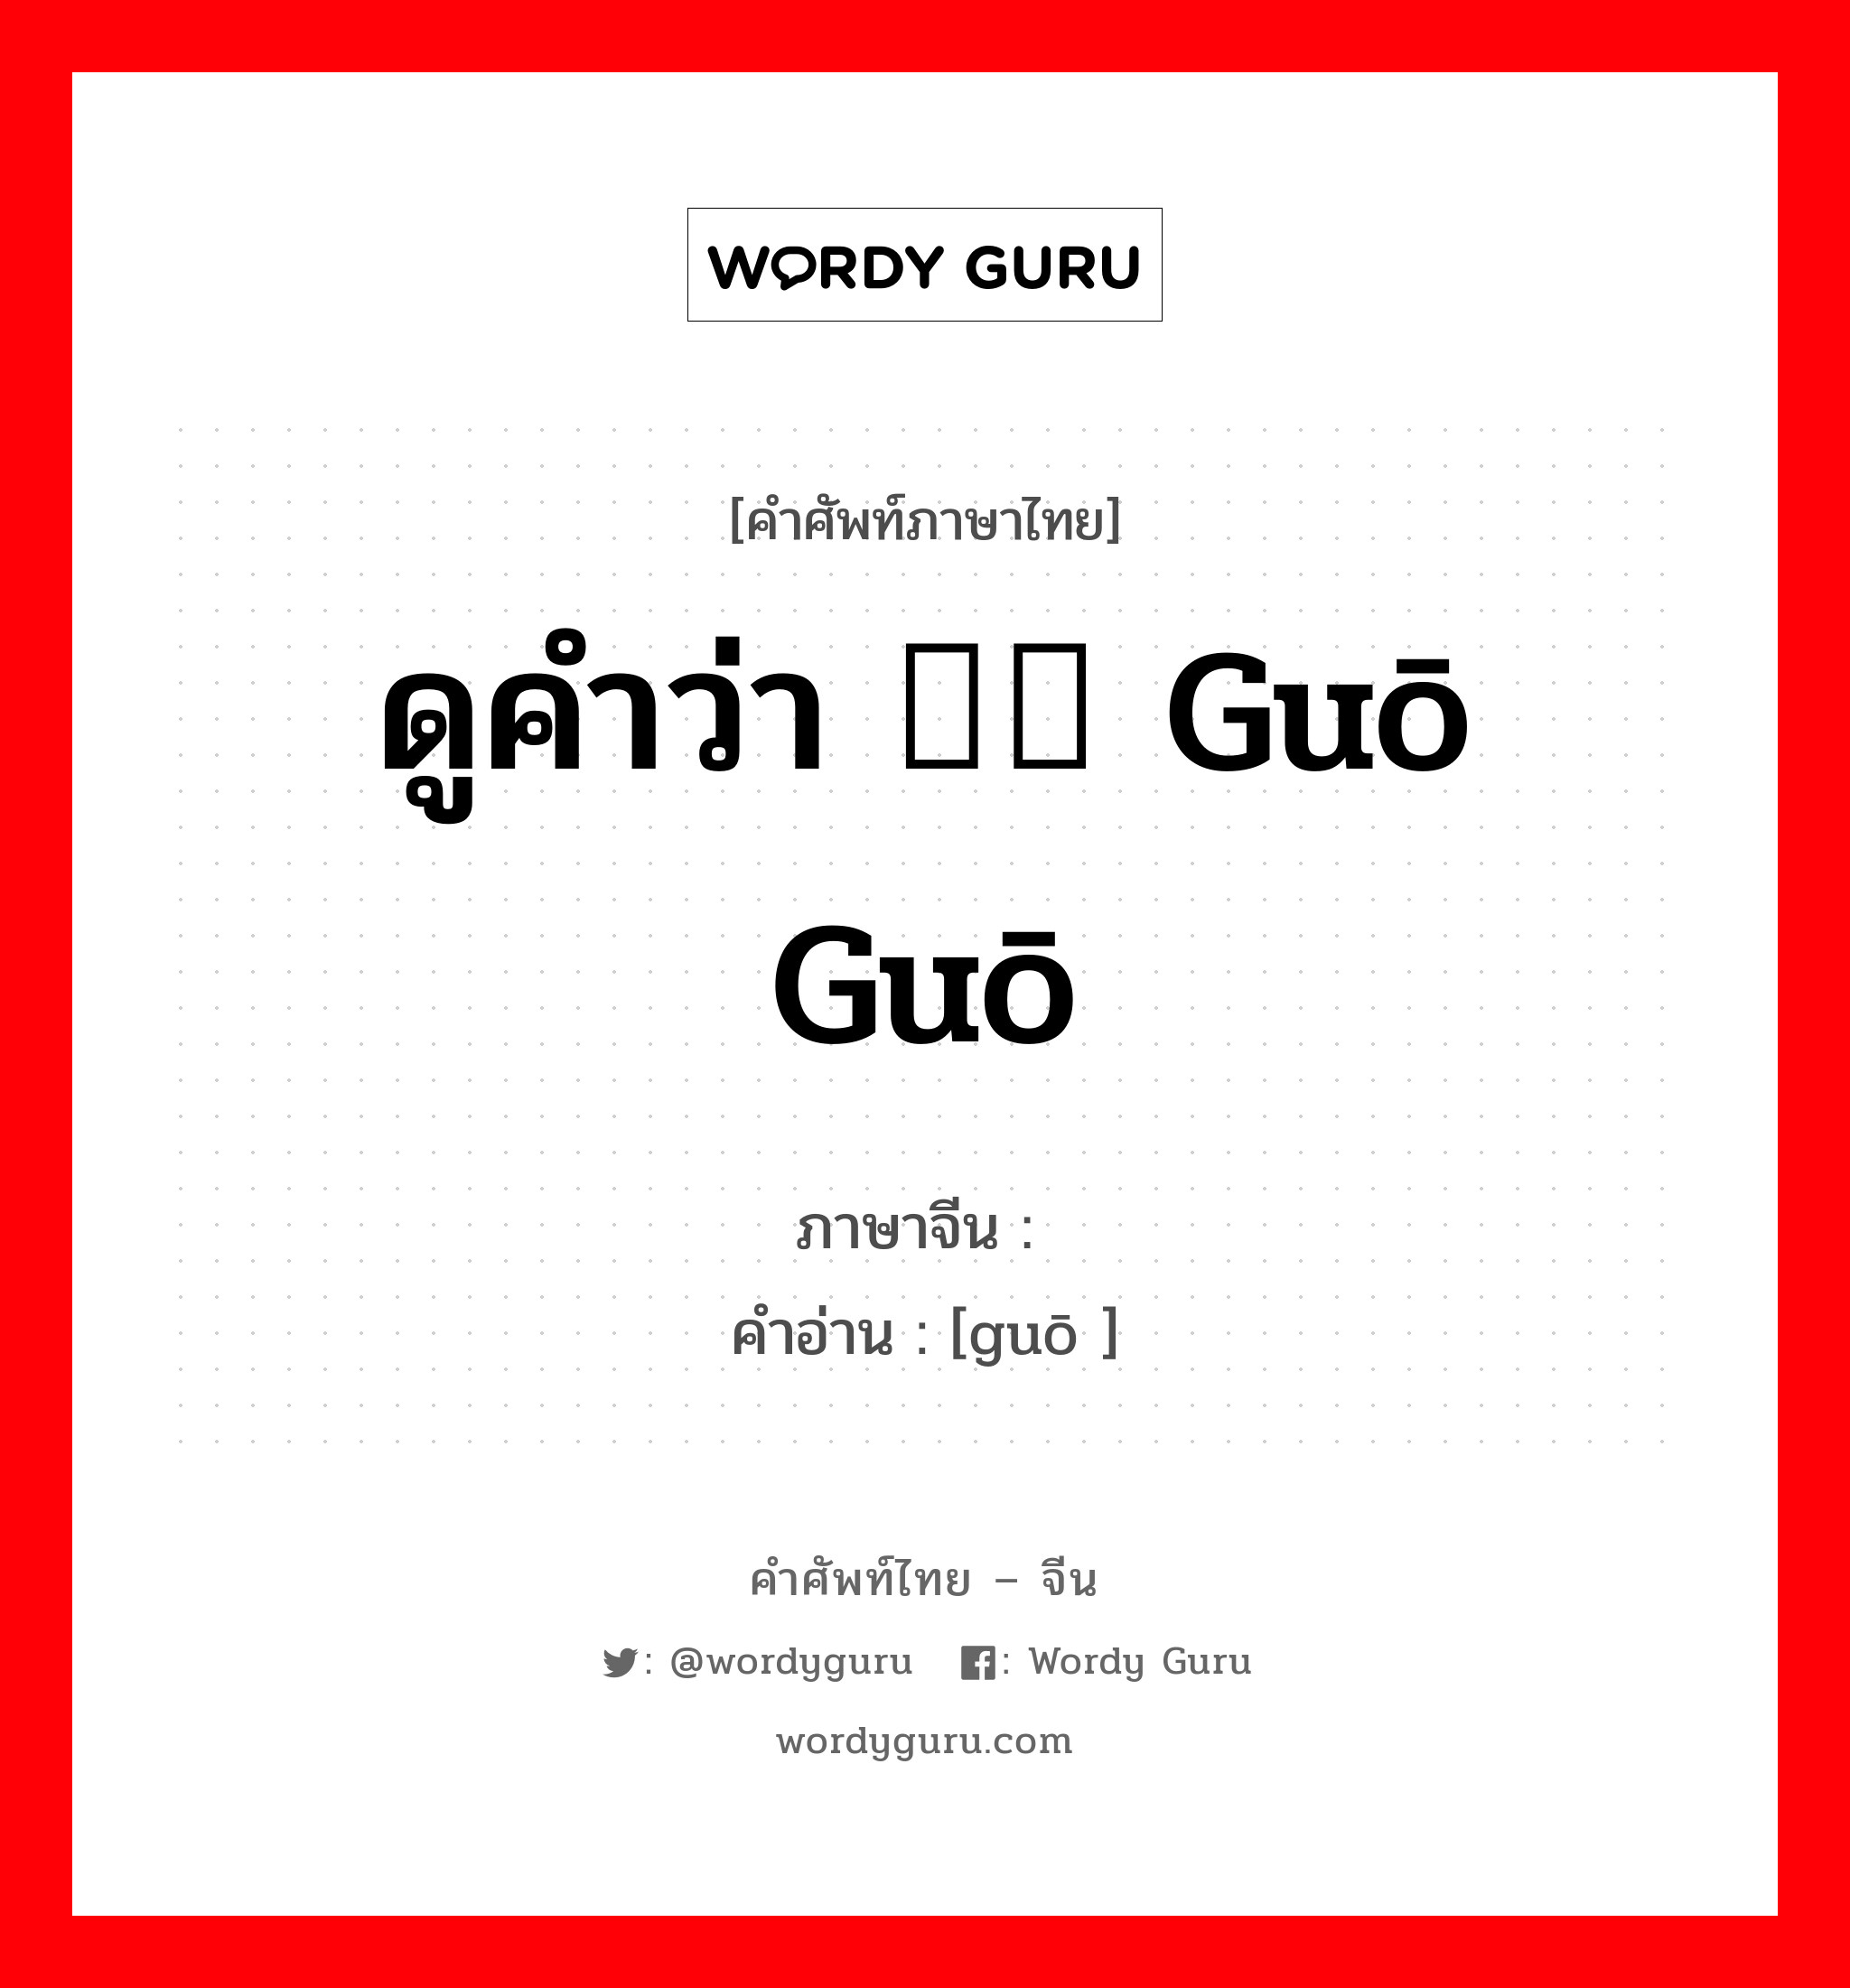 ดูคำว่า 蝈蝈 guō guō ภาษาจีนคืออะไร, คำศัพท์ภาษาไทย - จีน ดูคำว่า 蝈蝈 guō guō ภาษาจีน 蝈 คำอ่าน [guō ]